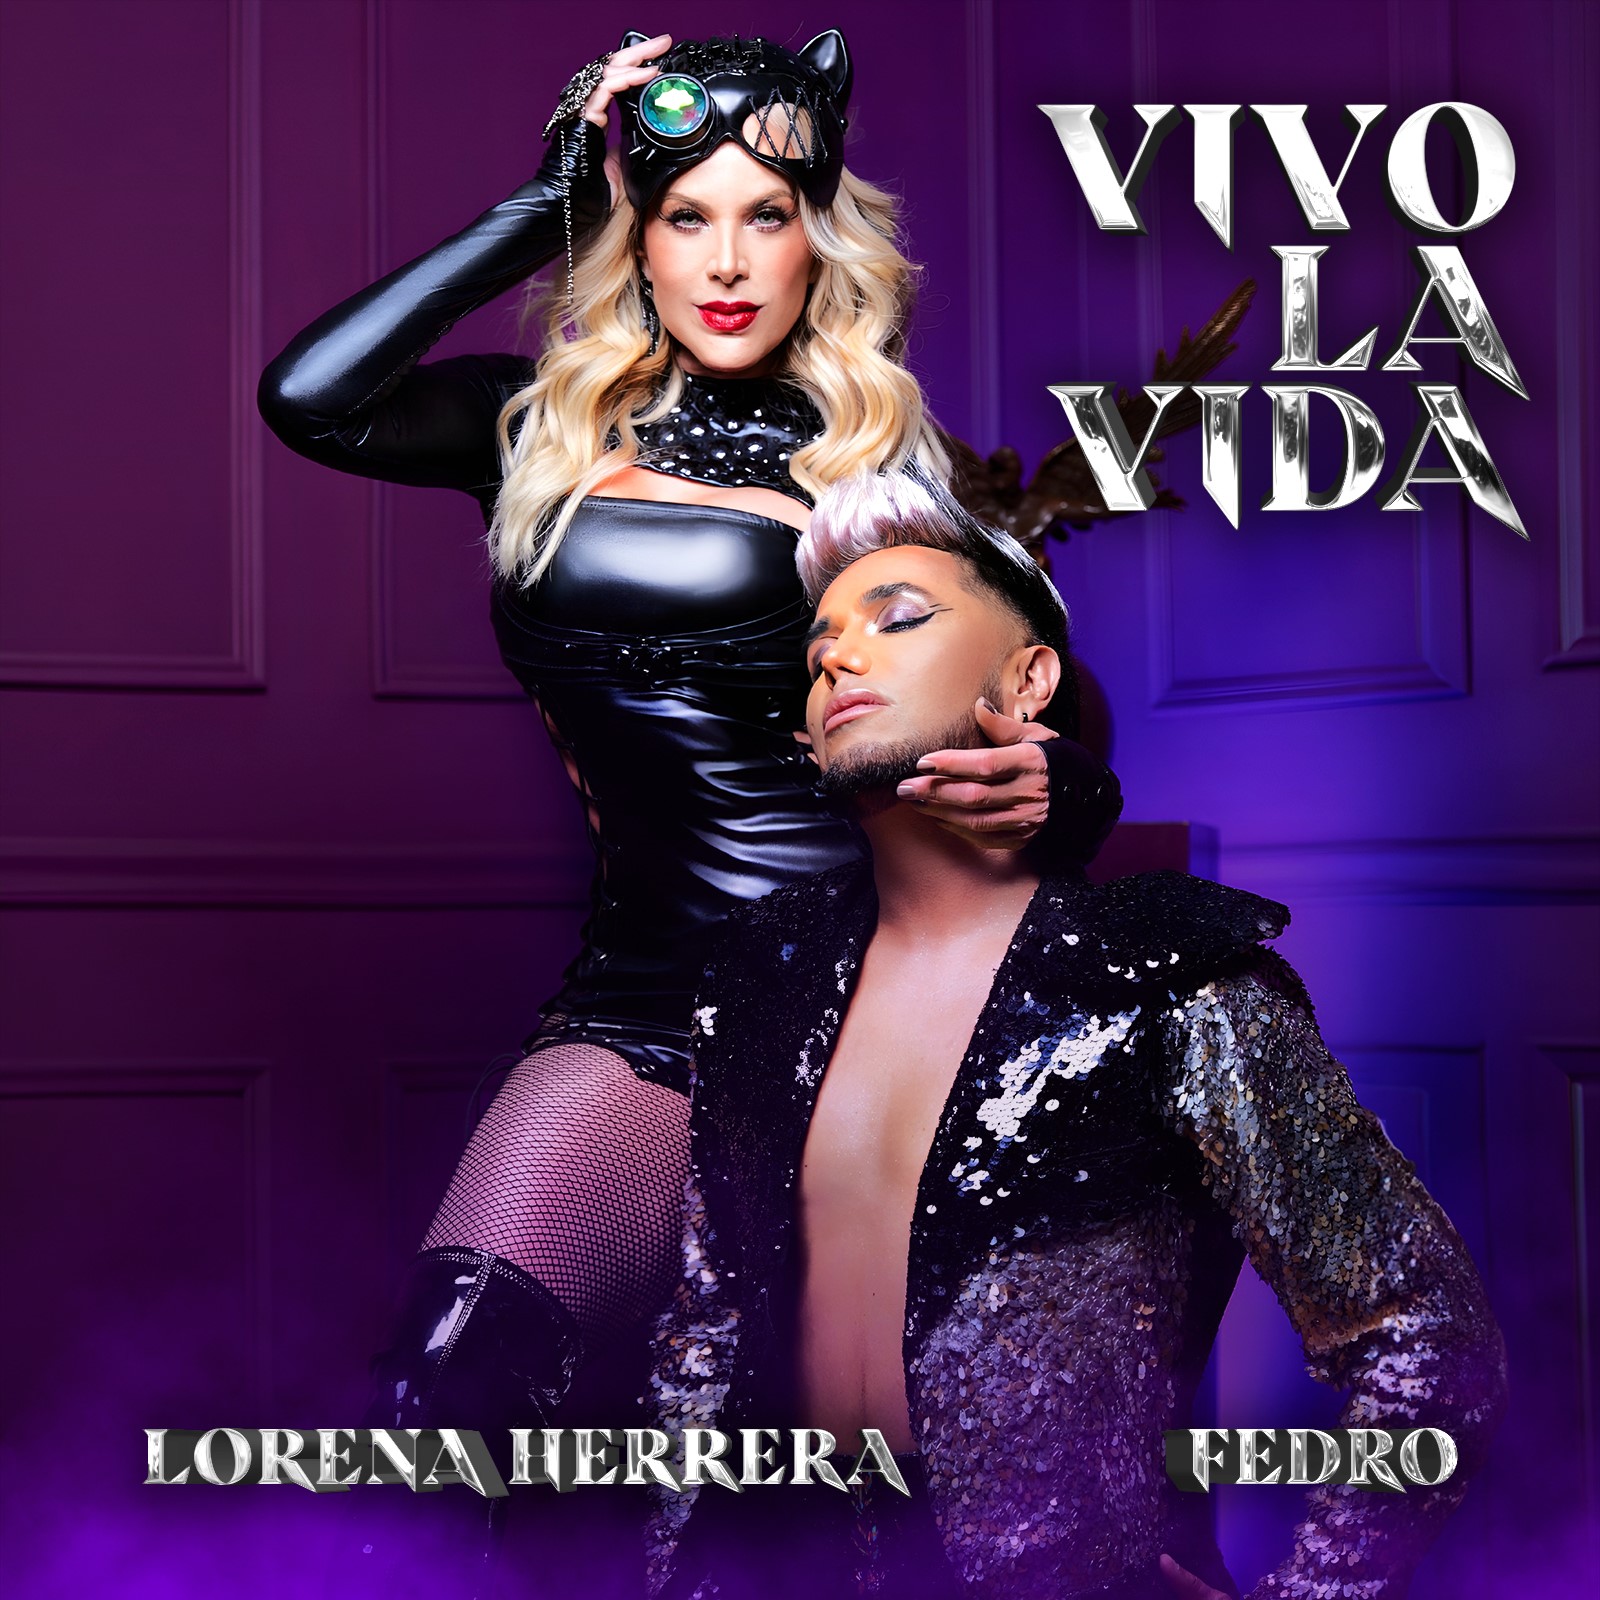 LORENA HERRERA se une FEDRO para cantar nuevo himno de la comunidad LGBTQI+ “Vivo La Vida”